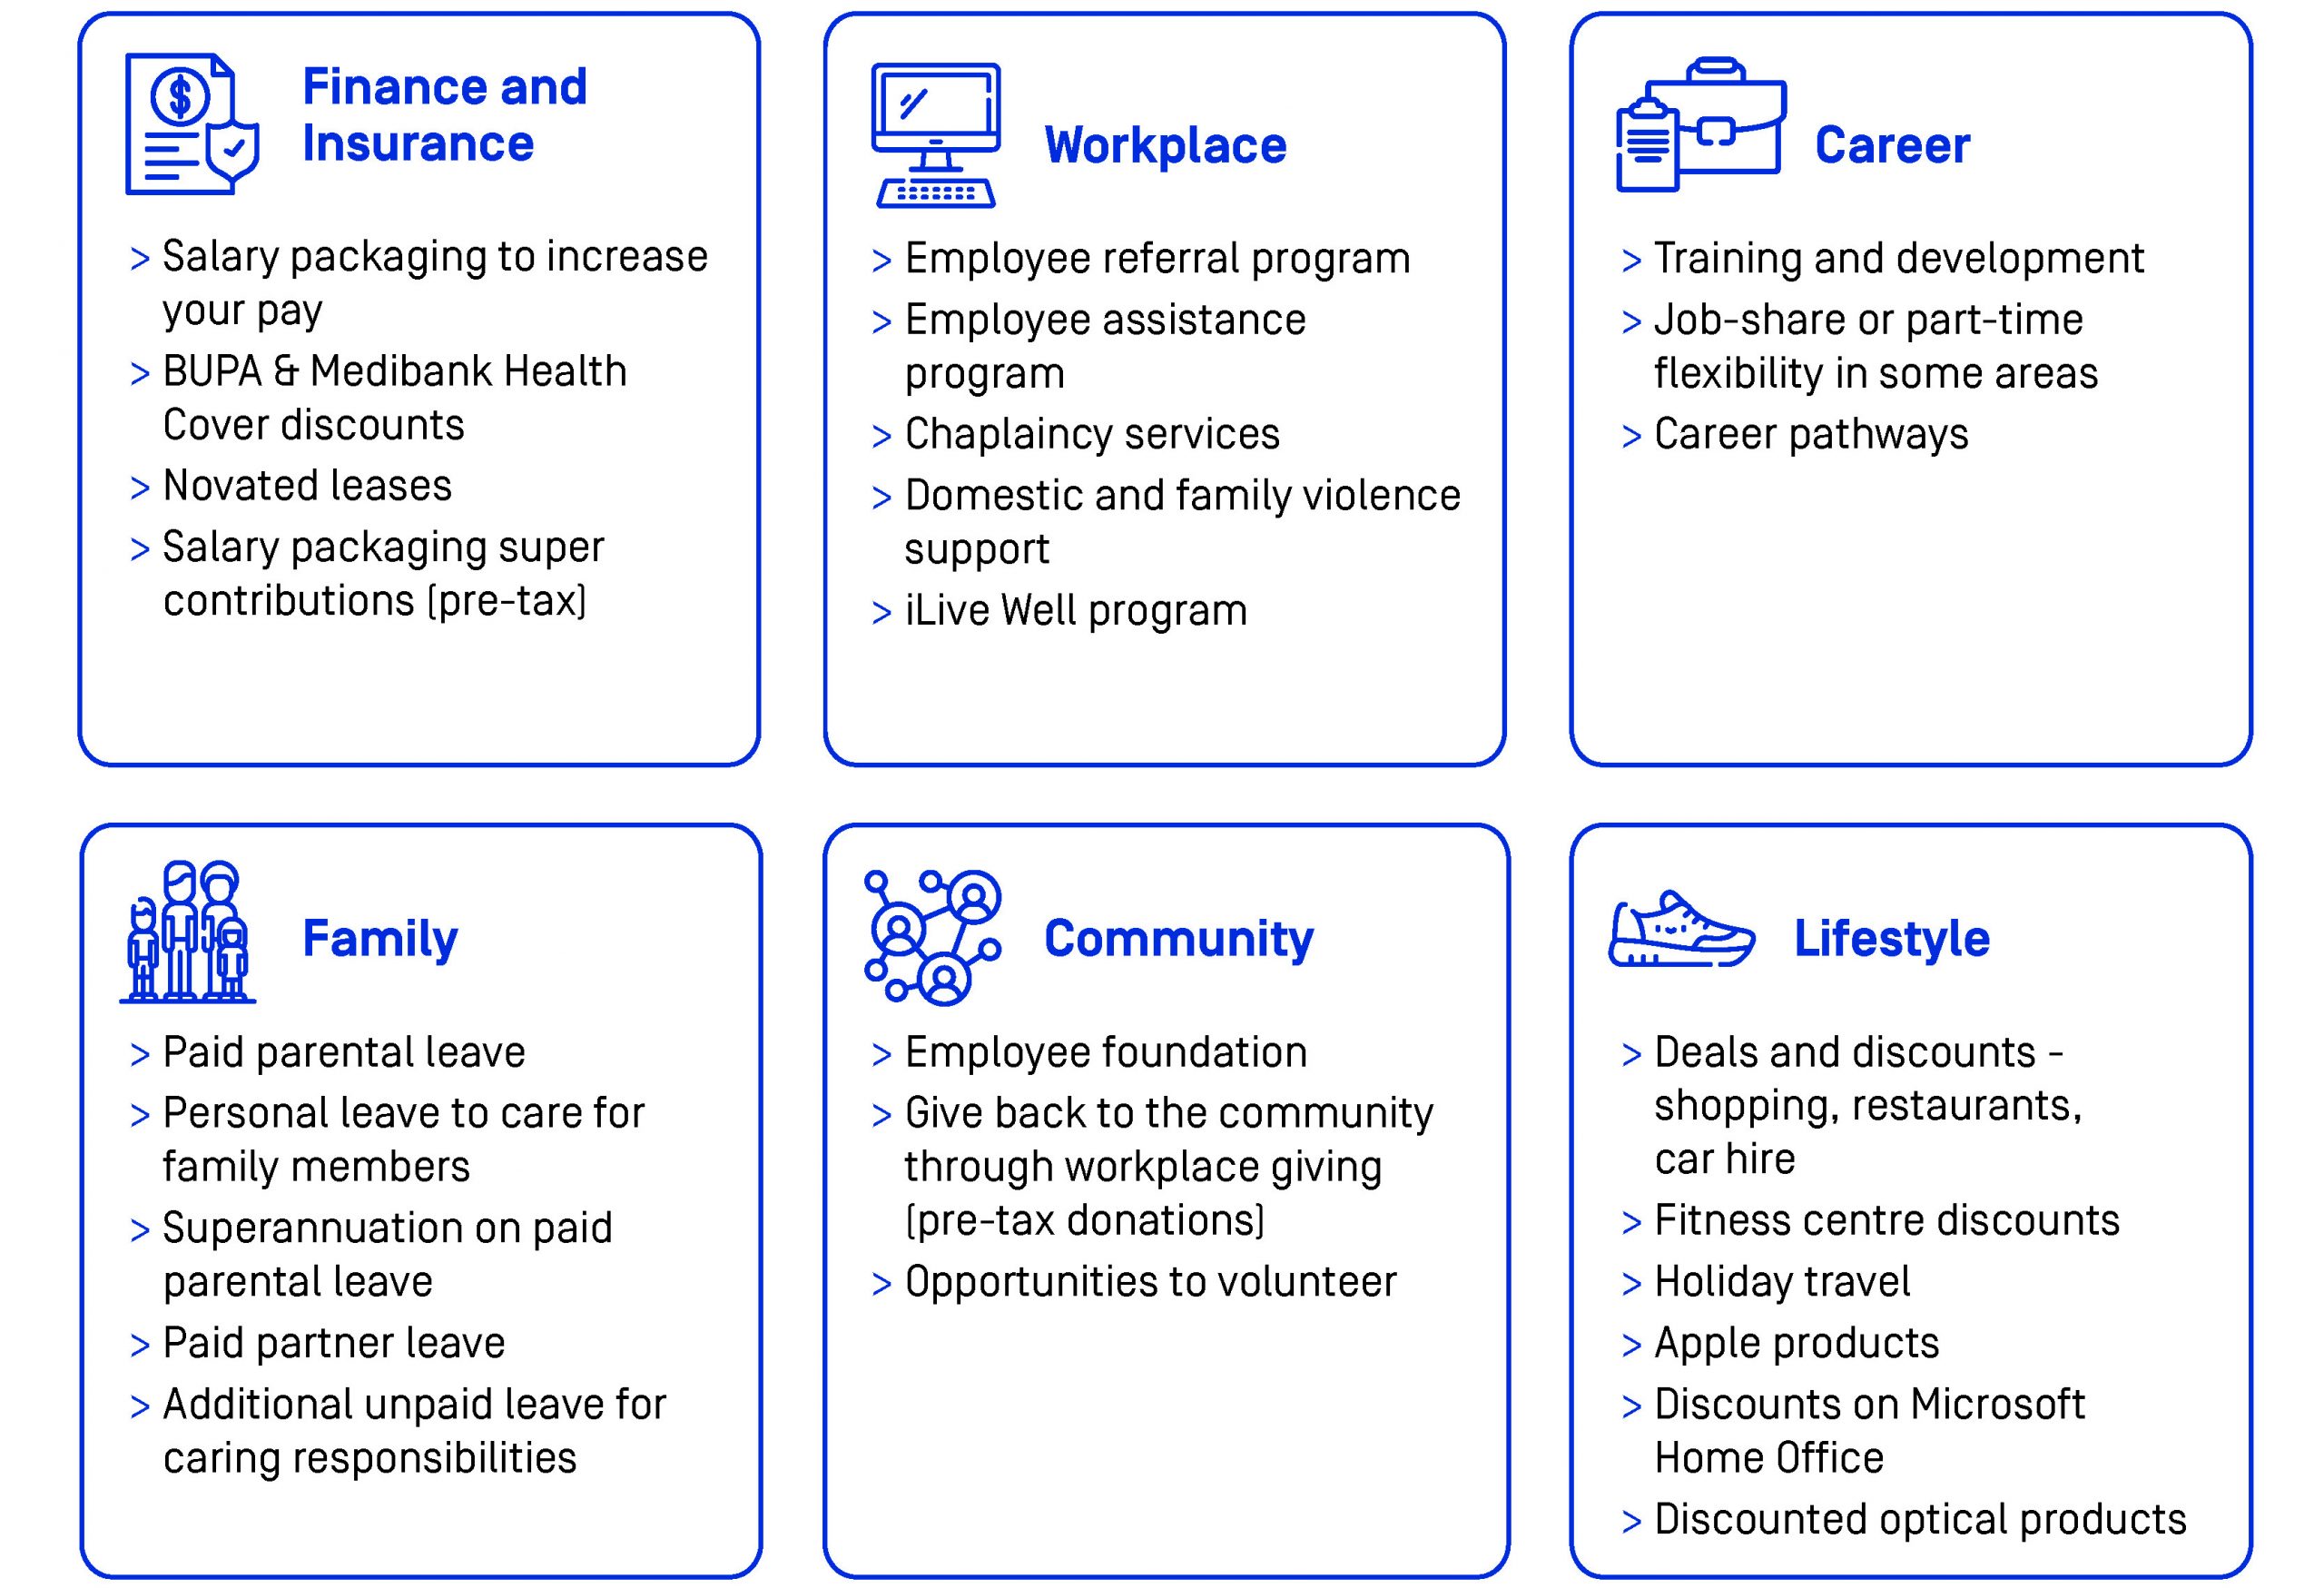 AnglicareSA Employee Benefits